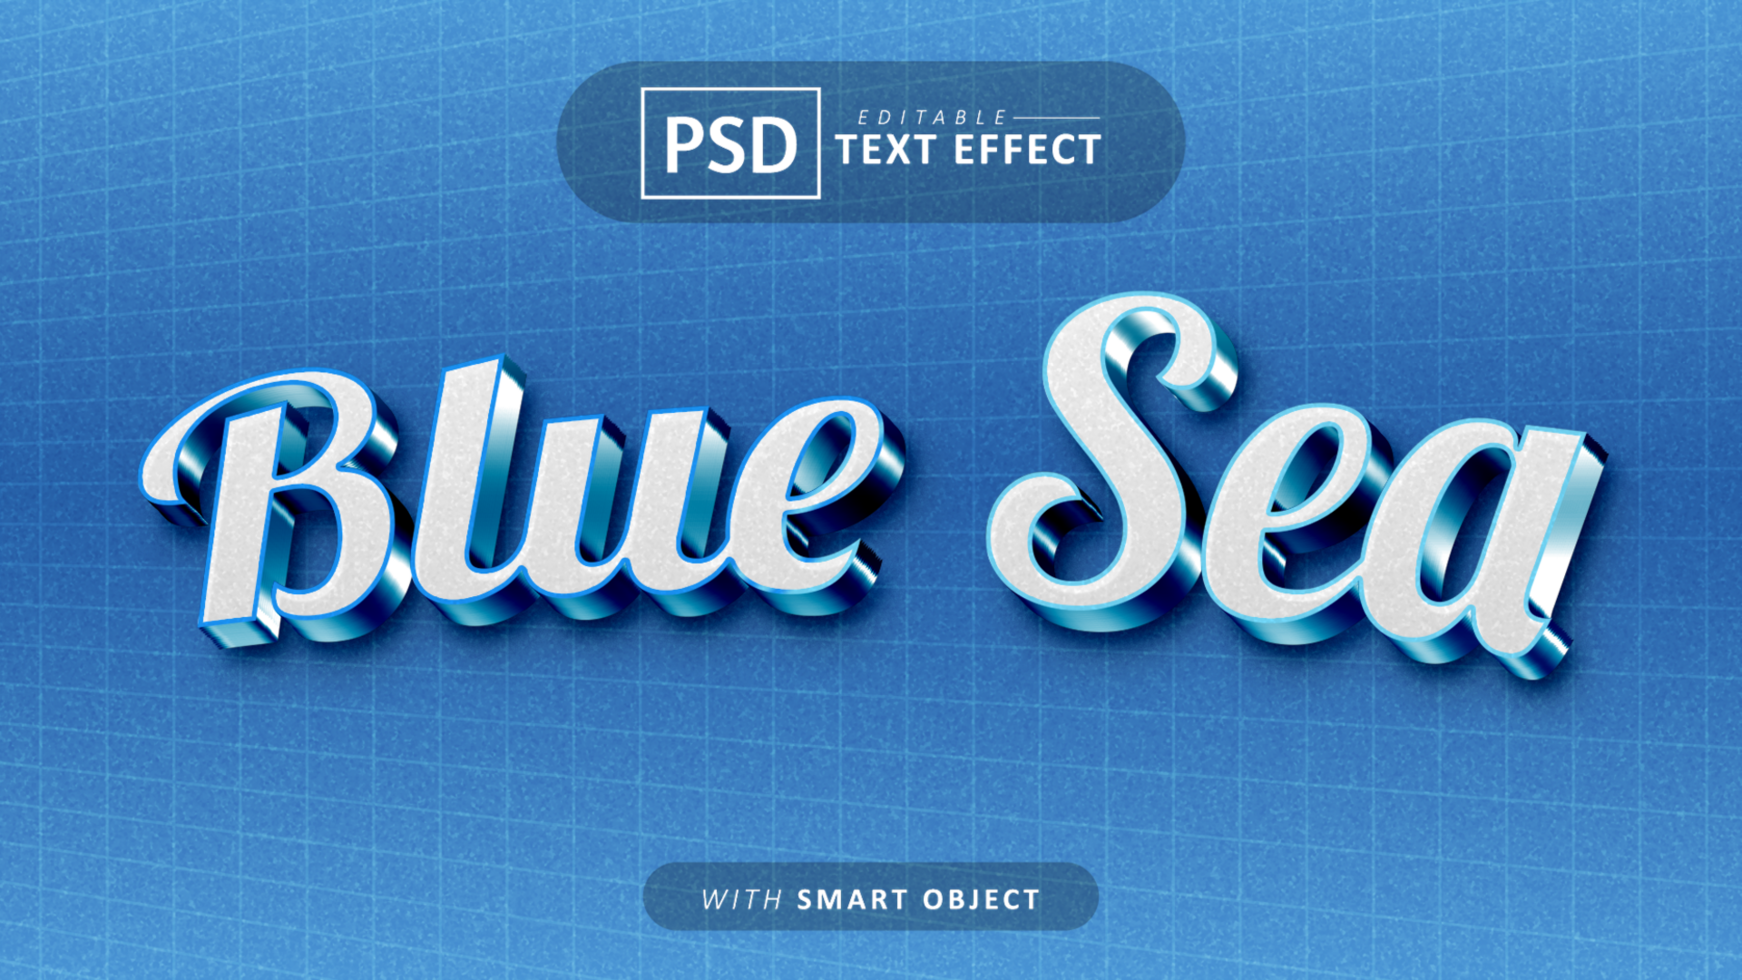 Blue sea text - 3d font effects psd